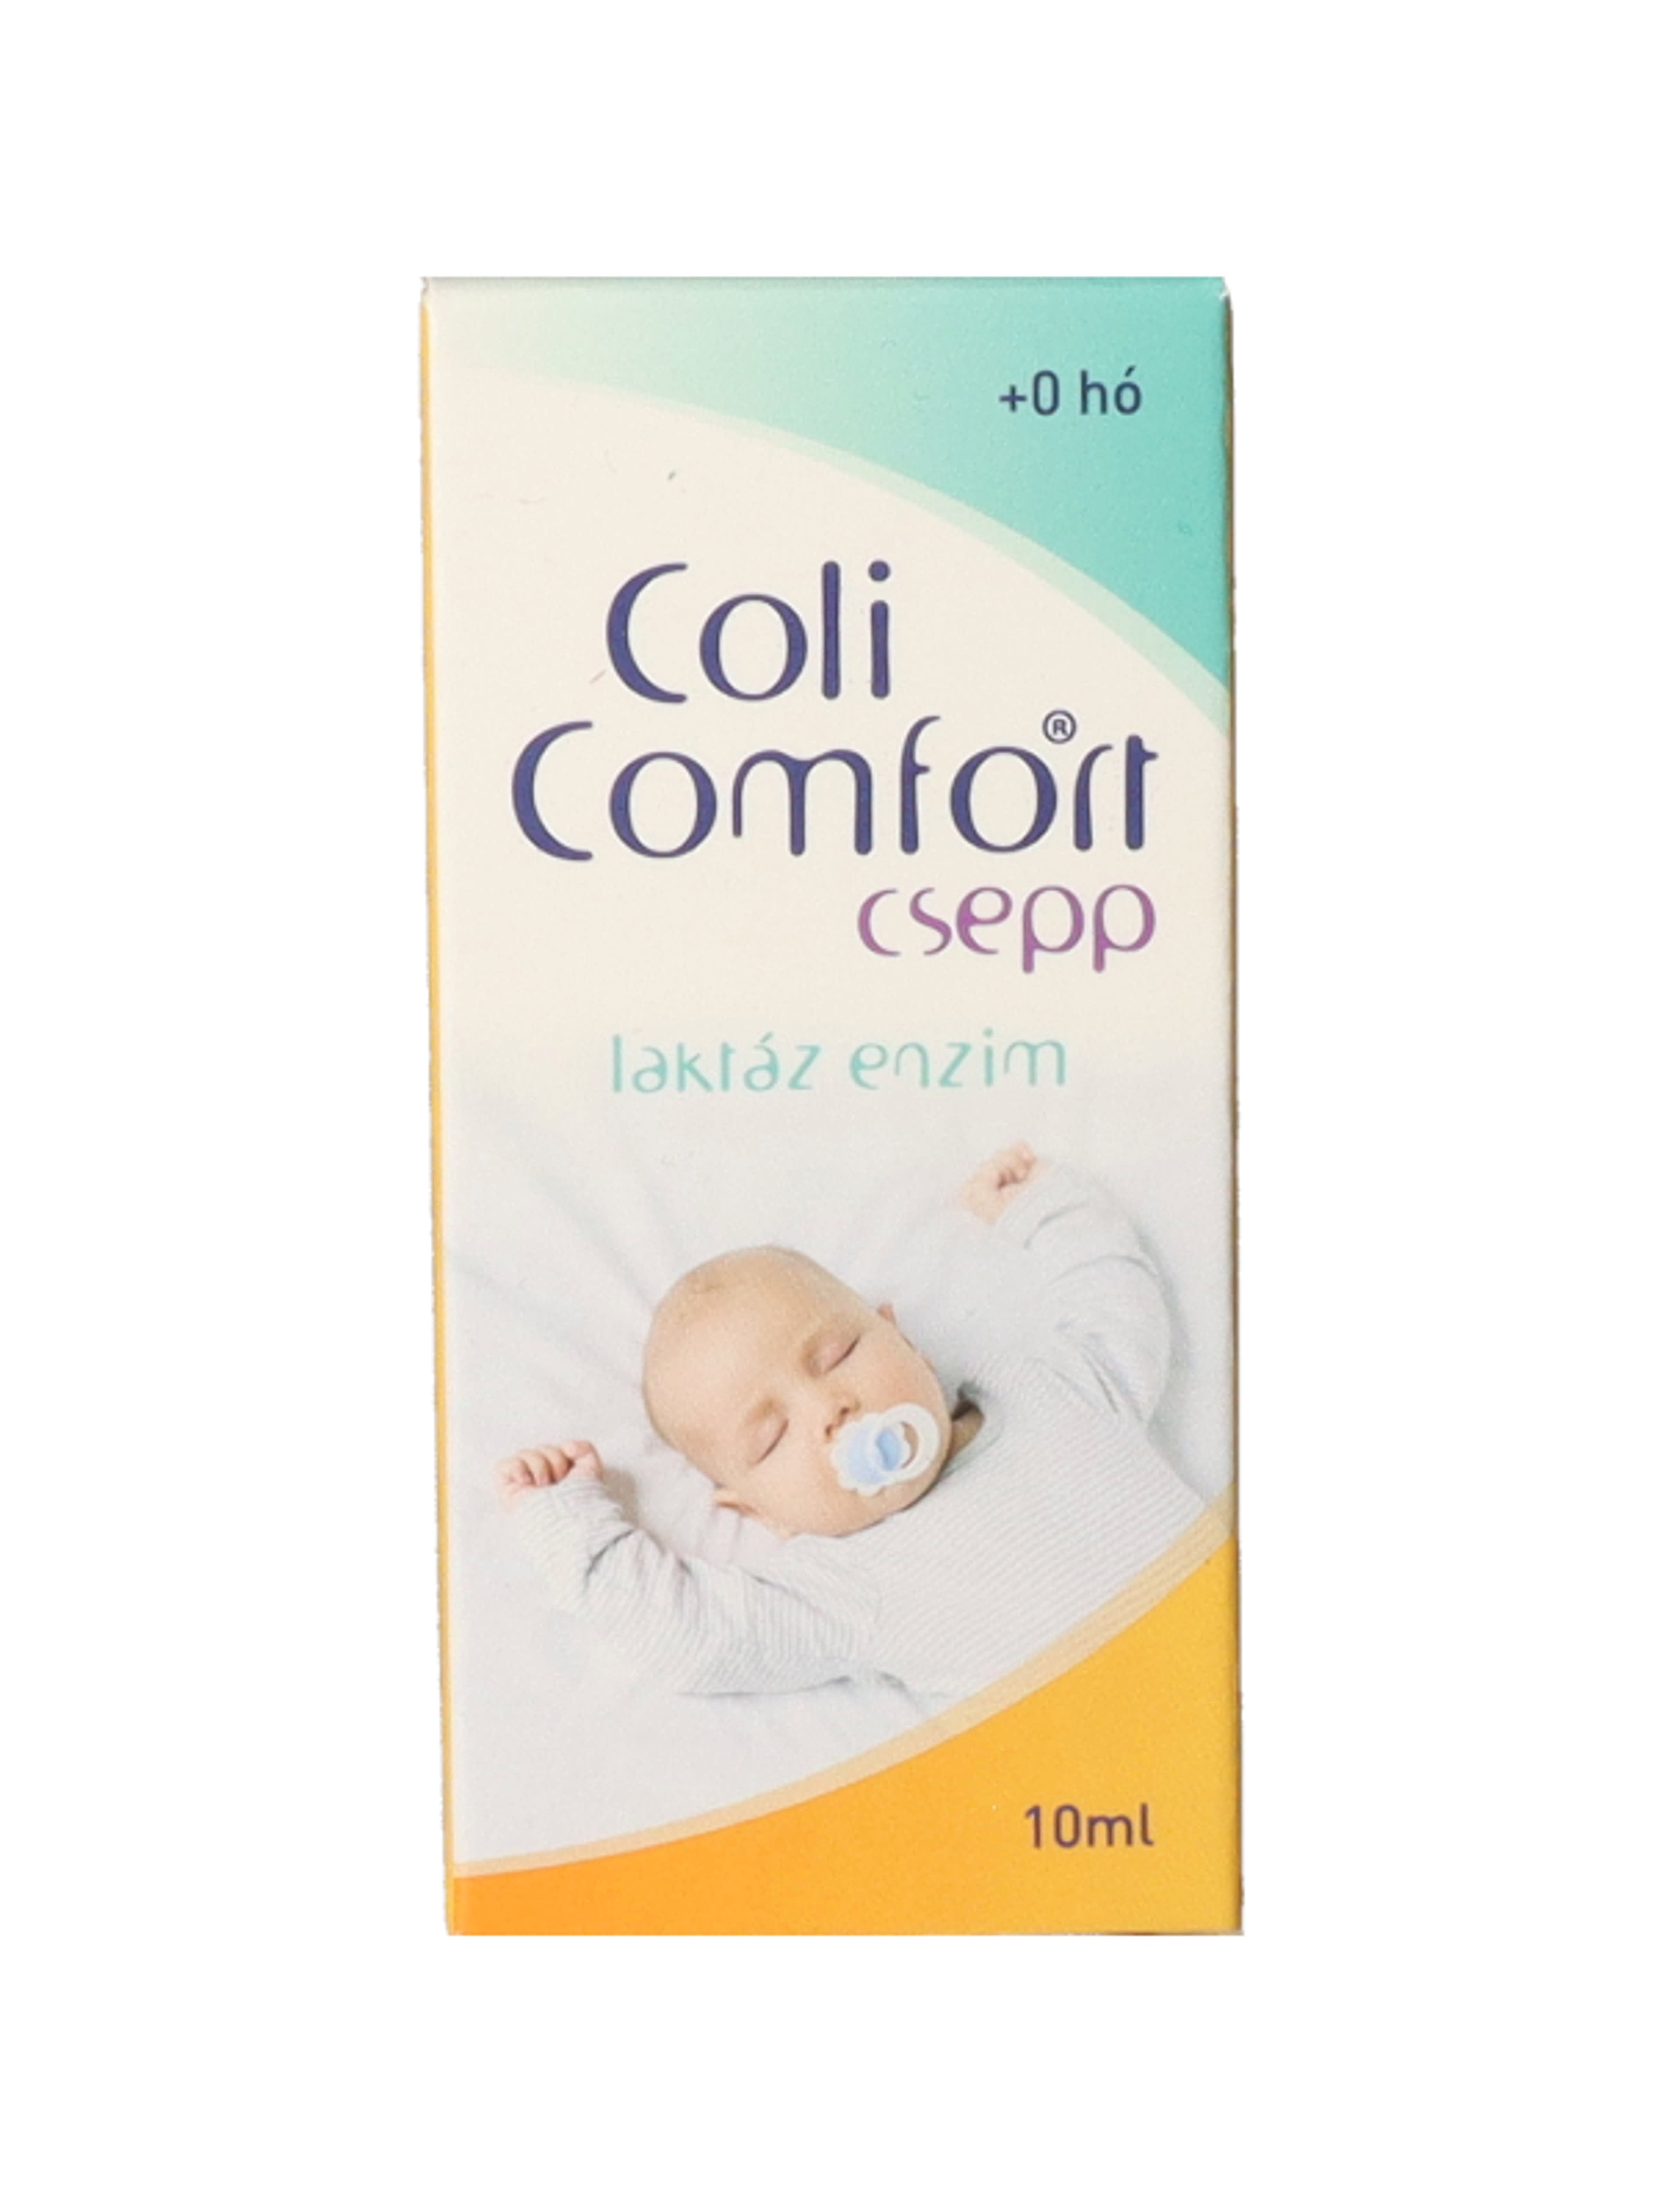 Coli comfort csepp laktáz enzim 0 hónapos kortól - 10 ml